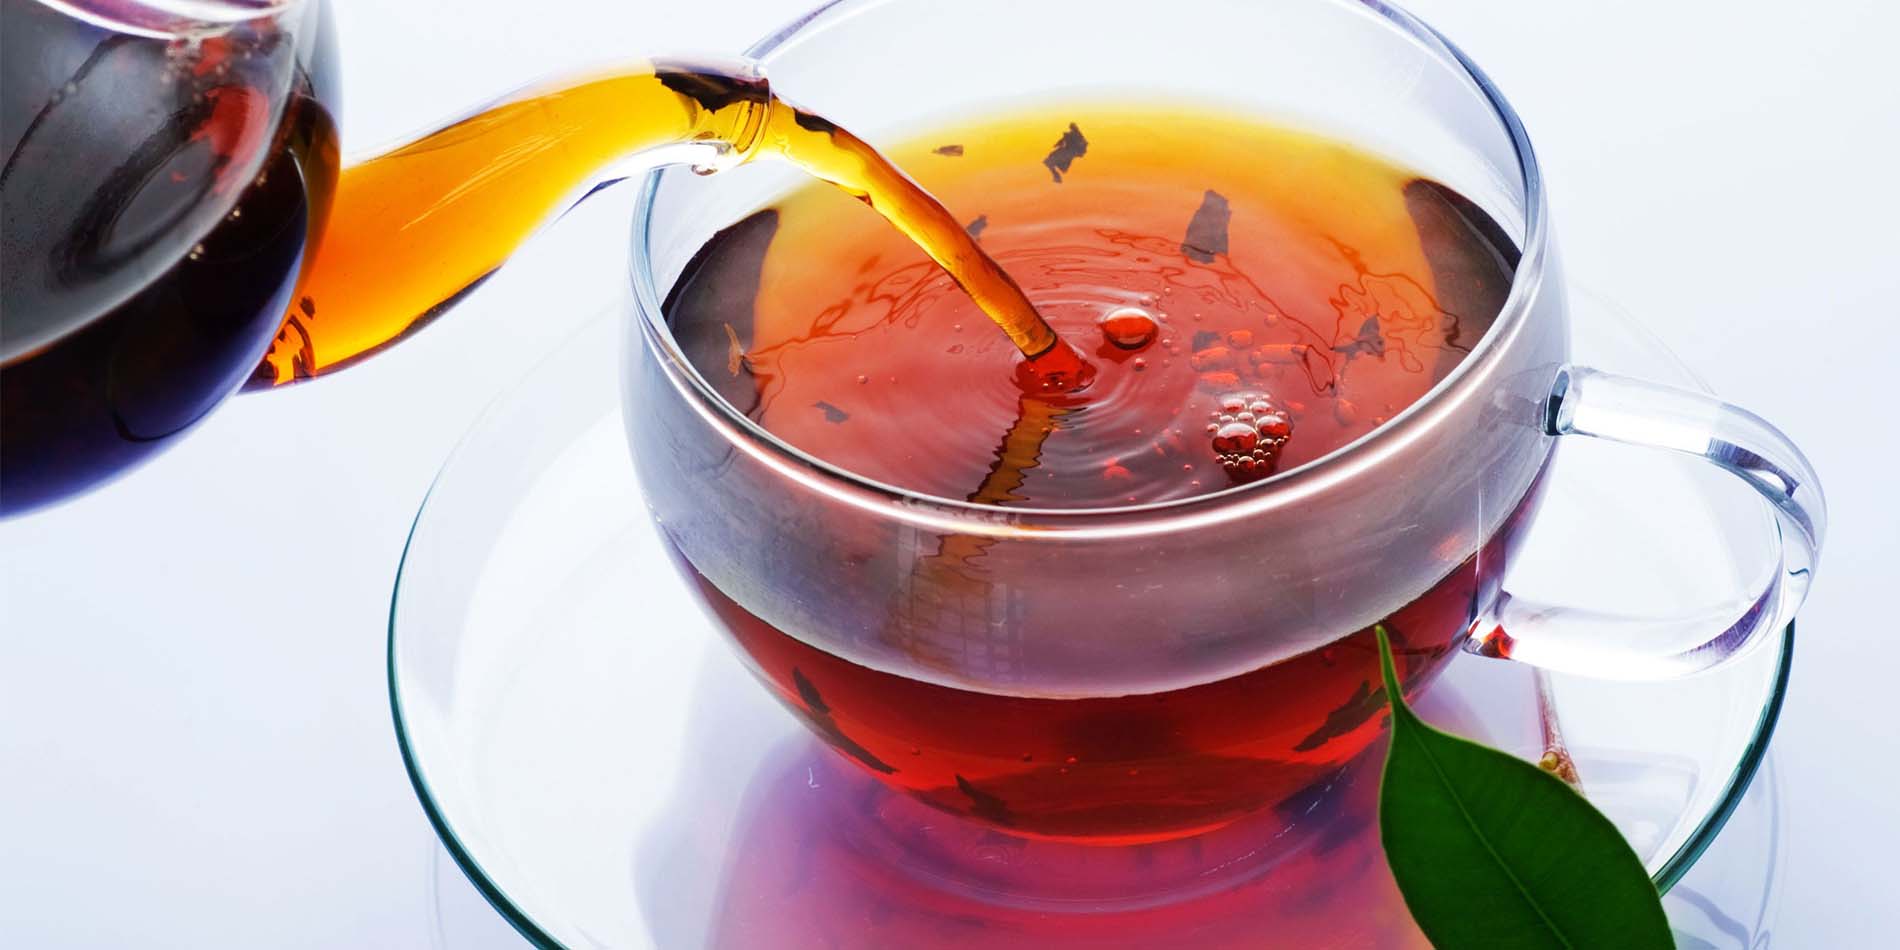 اعلام نرخ خرید تضمینی چای تا چند روز دیگر